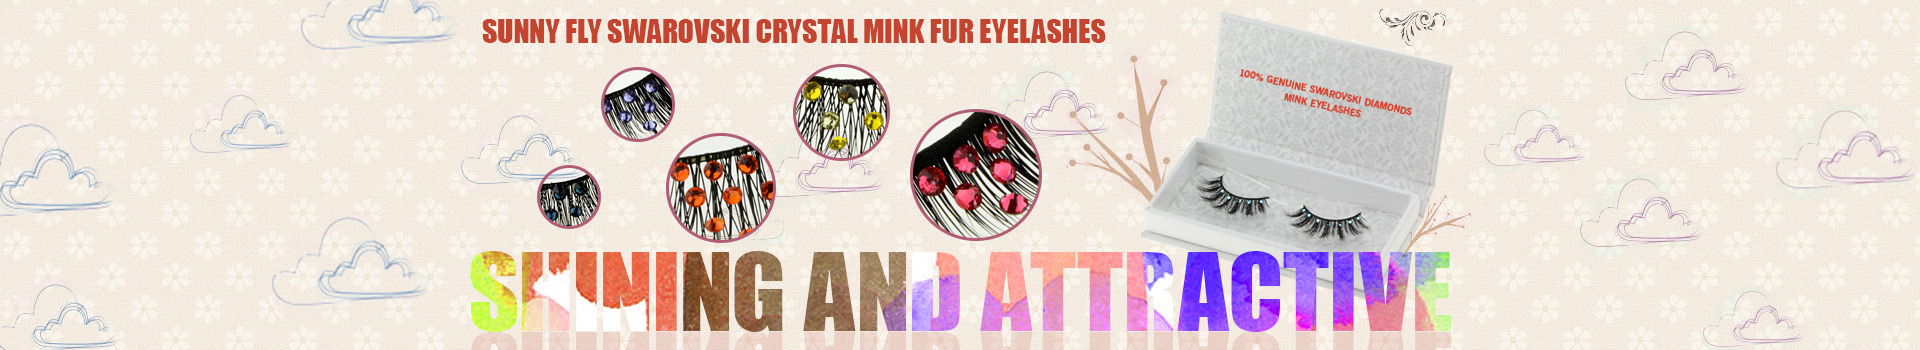 Swarovski Crystal Mink Fur Eyelashes MS28